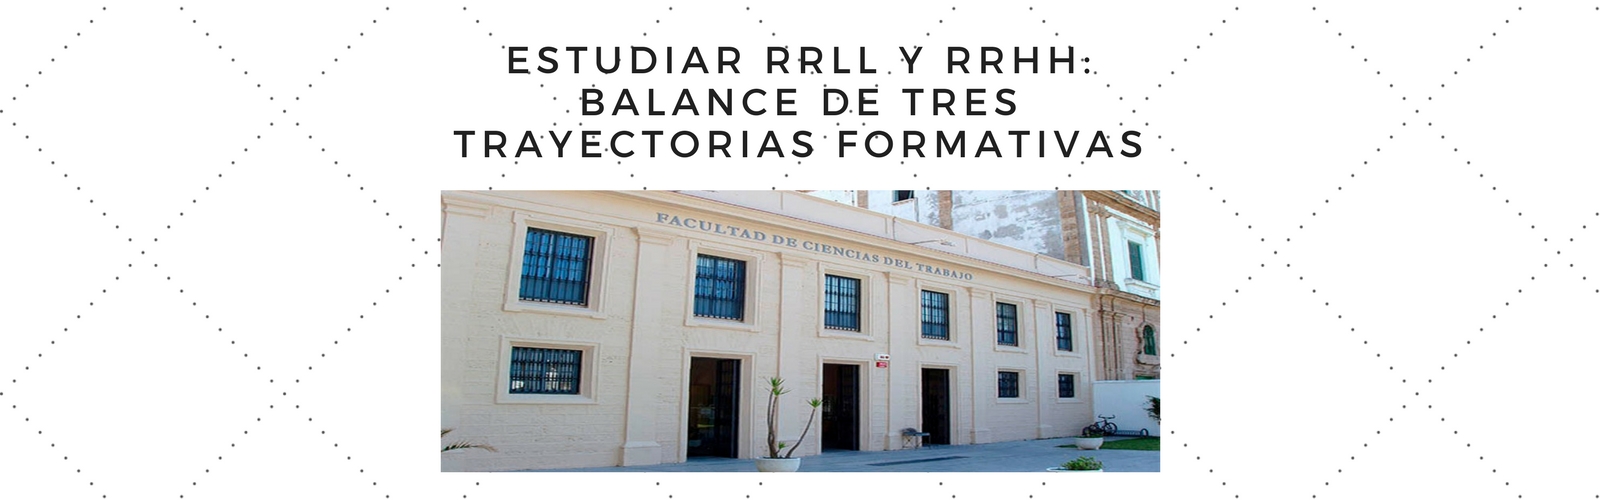 Estudiar RRLL Y RRHH: balance de tres trayectorias formativas. Por Carla Cabeza Lozano.